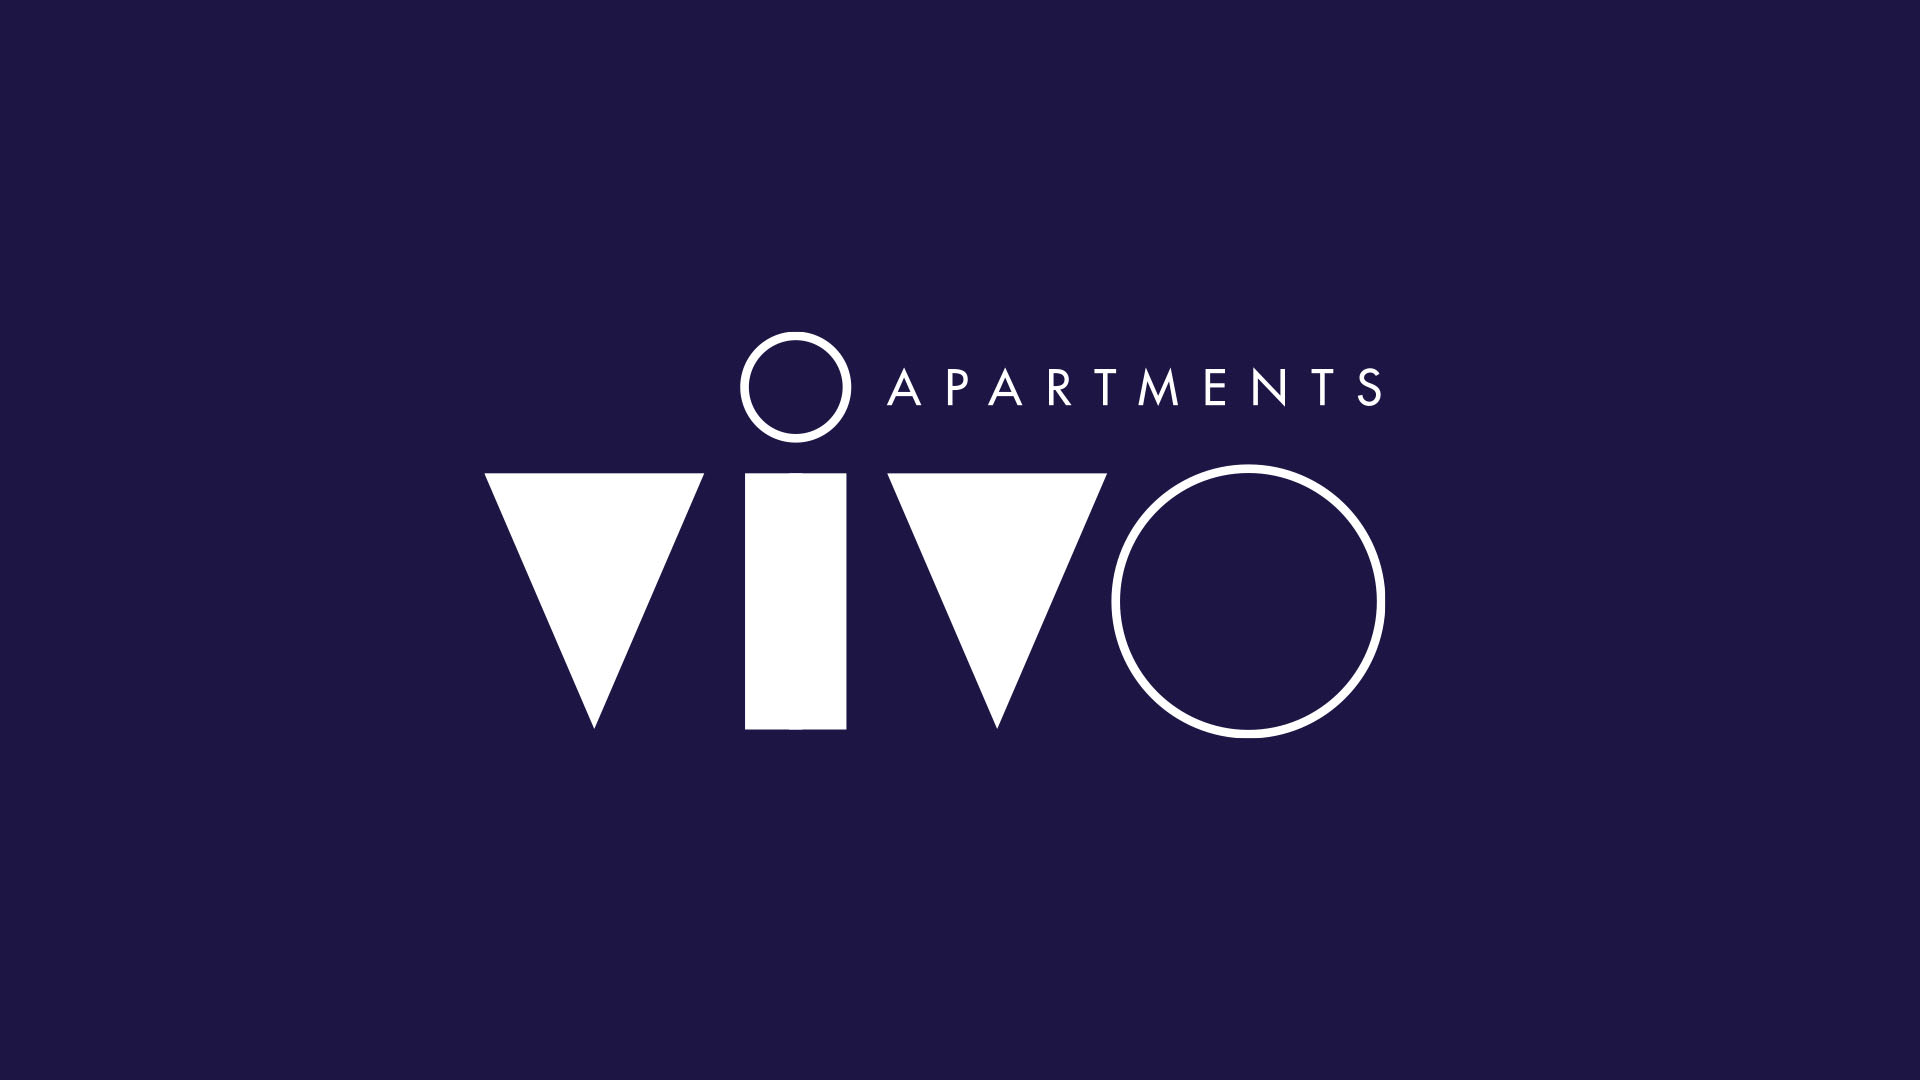 vivo apartments logo white on navy